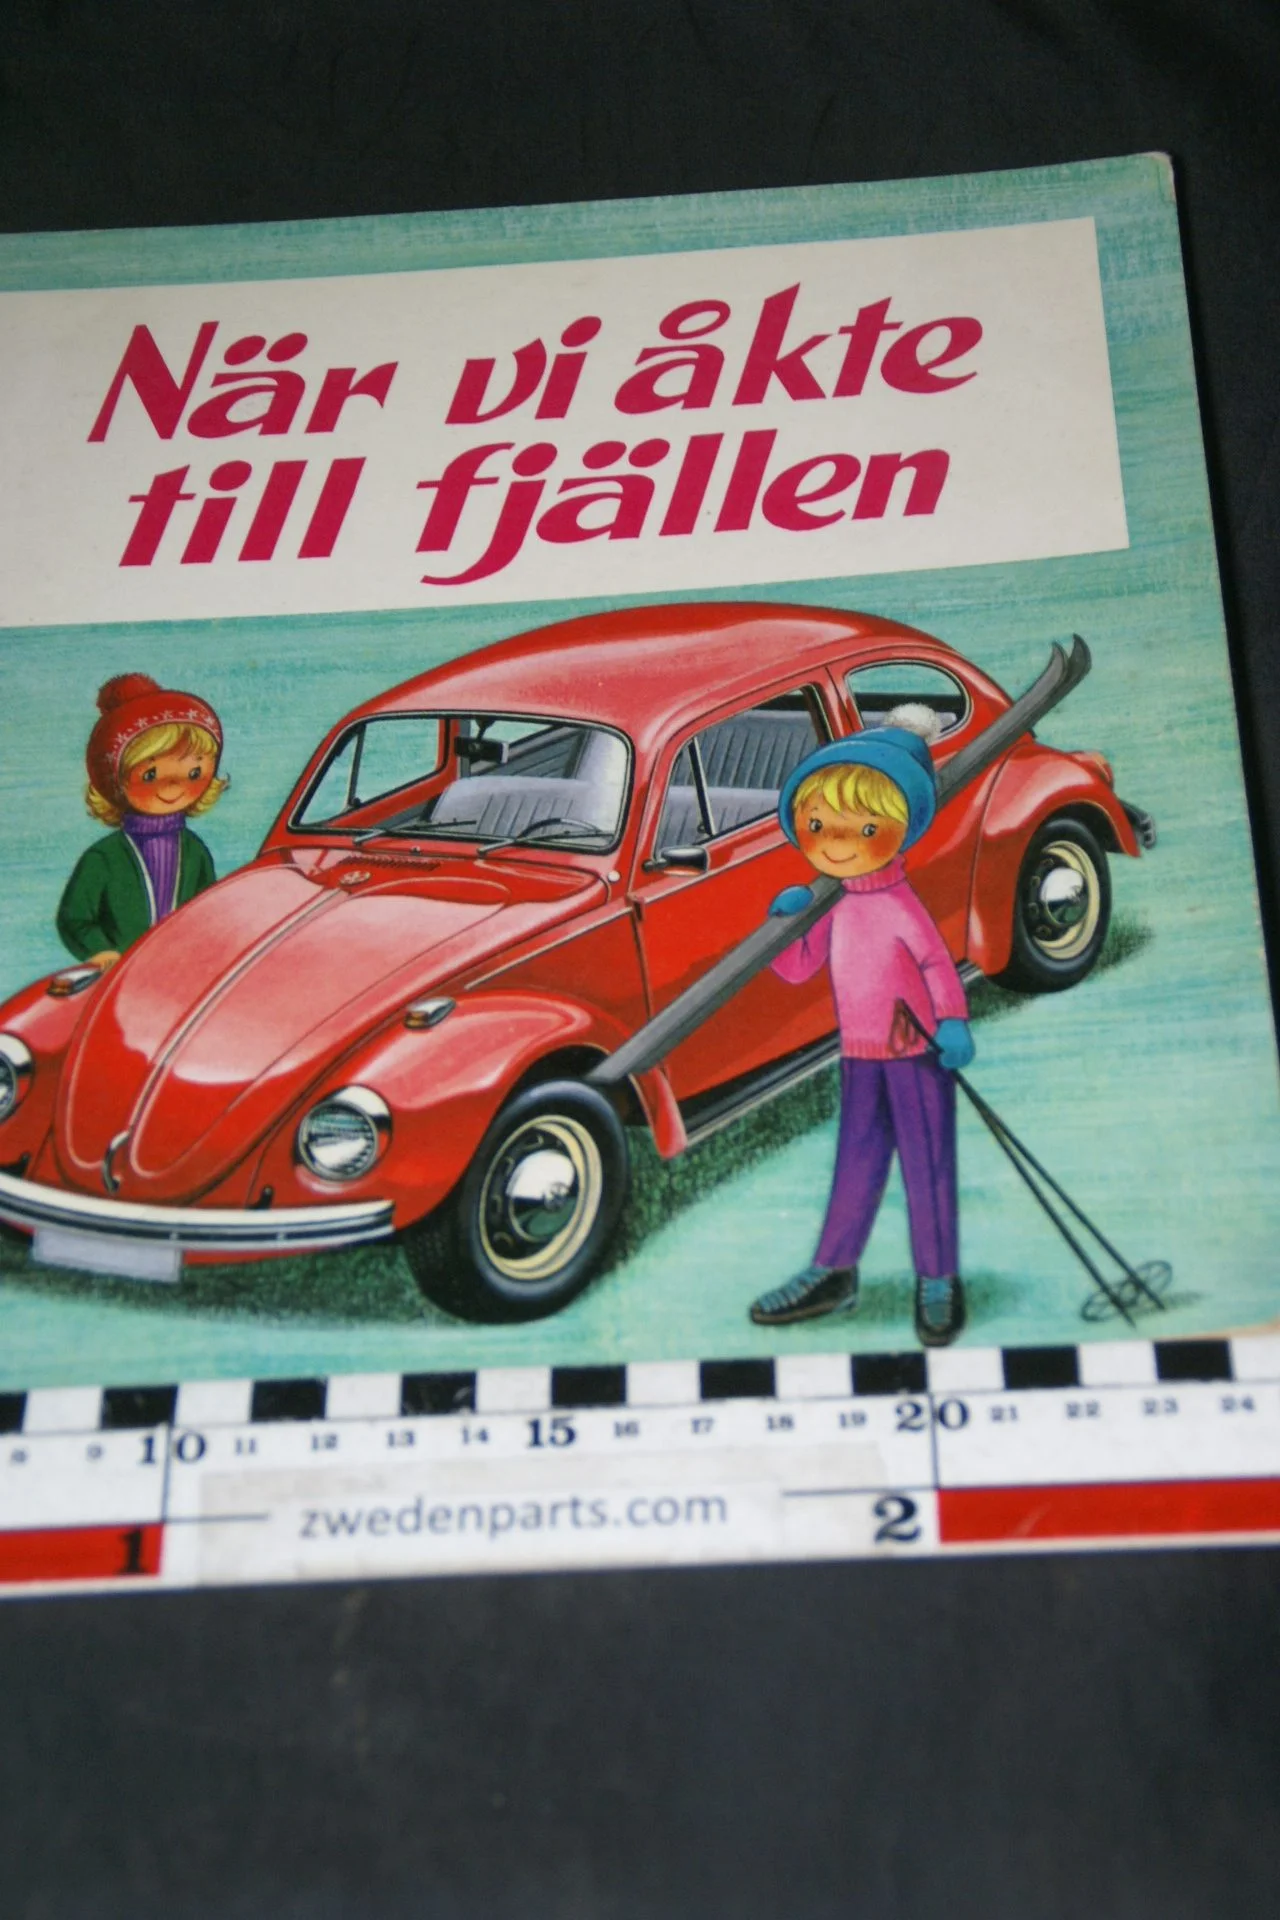 DSC04683 boek När vi åkte till fjällen met VW kever Svenskt